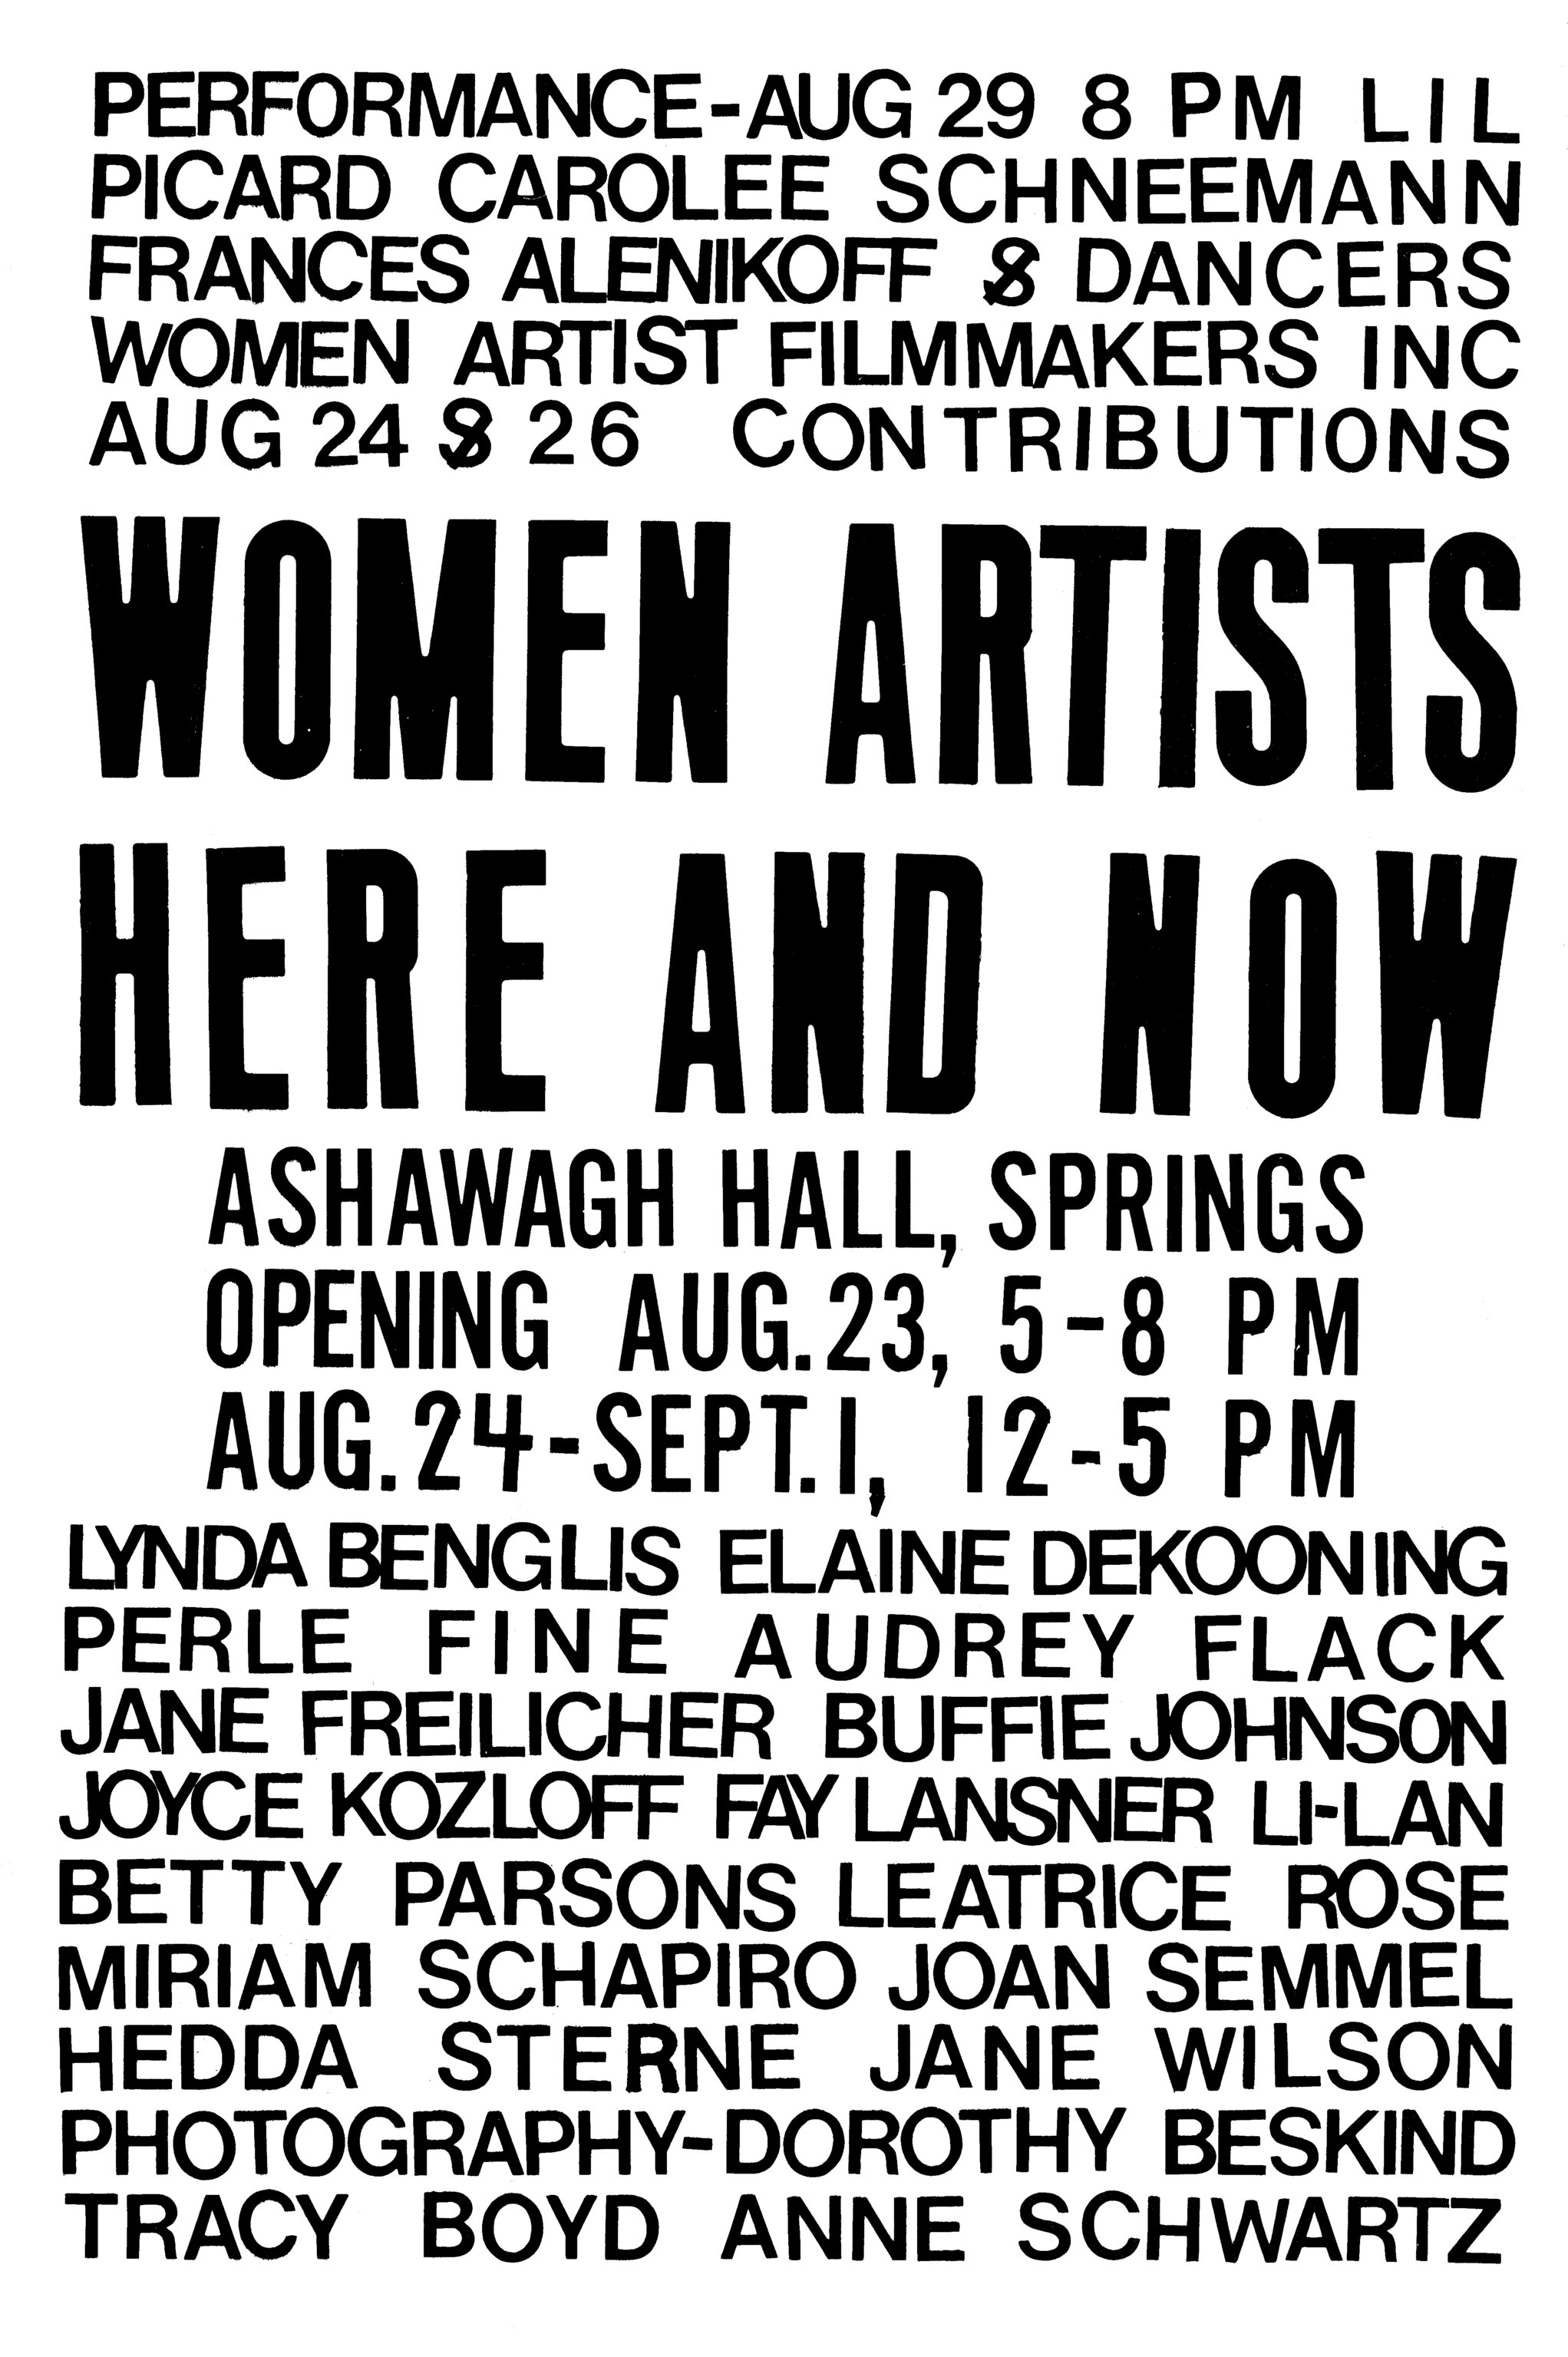 Joyce Kozloff and Joan Semmel, "Woman Artists Here & Now", 2021